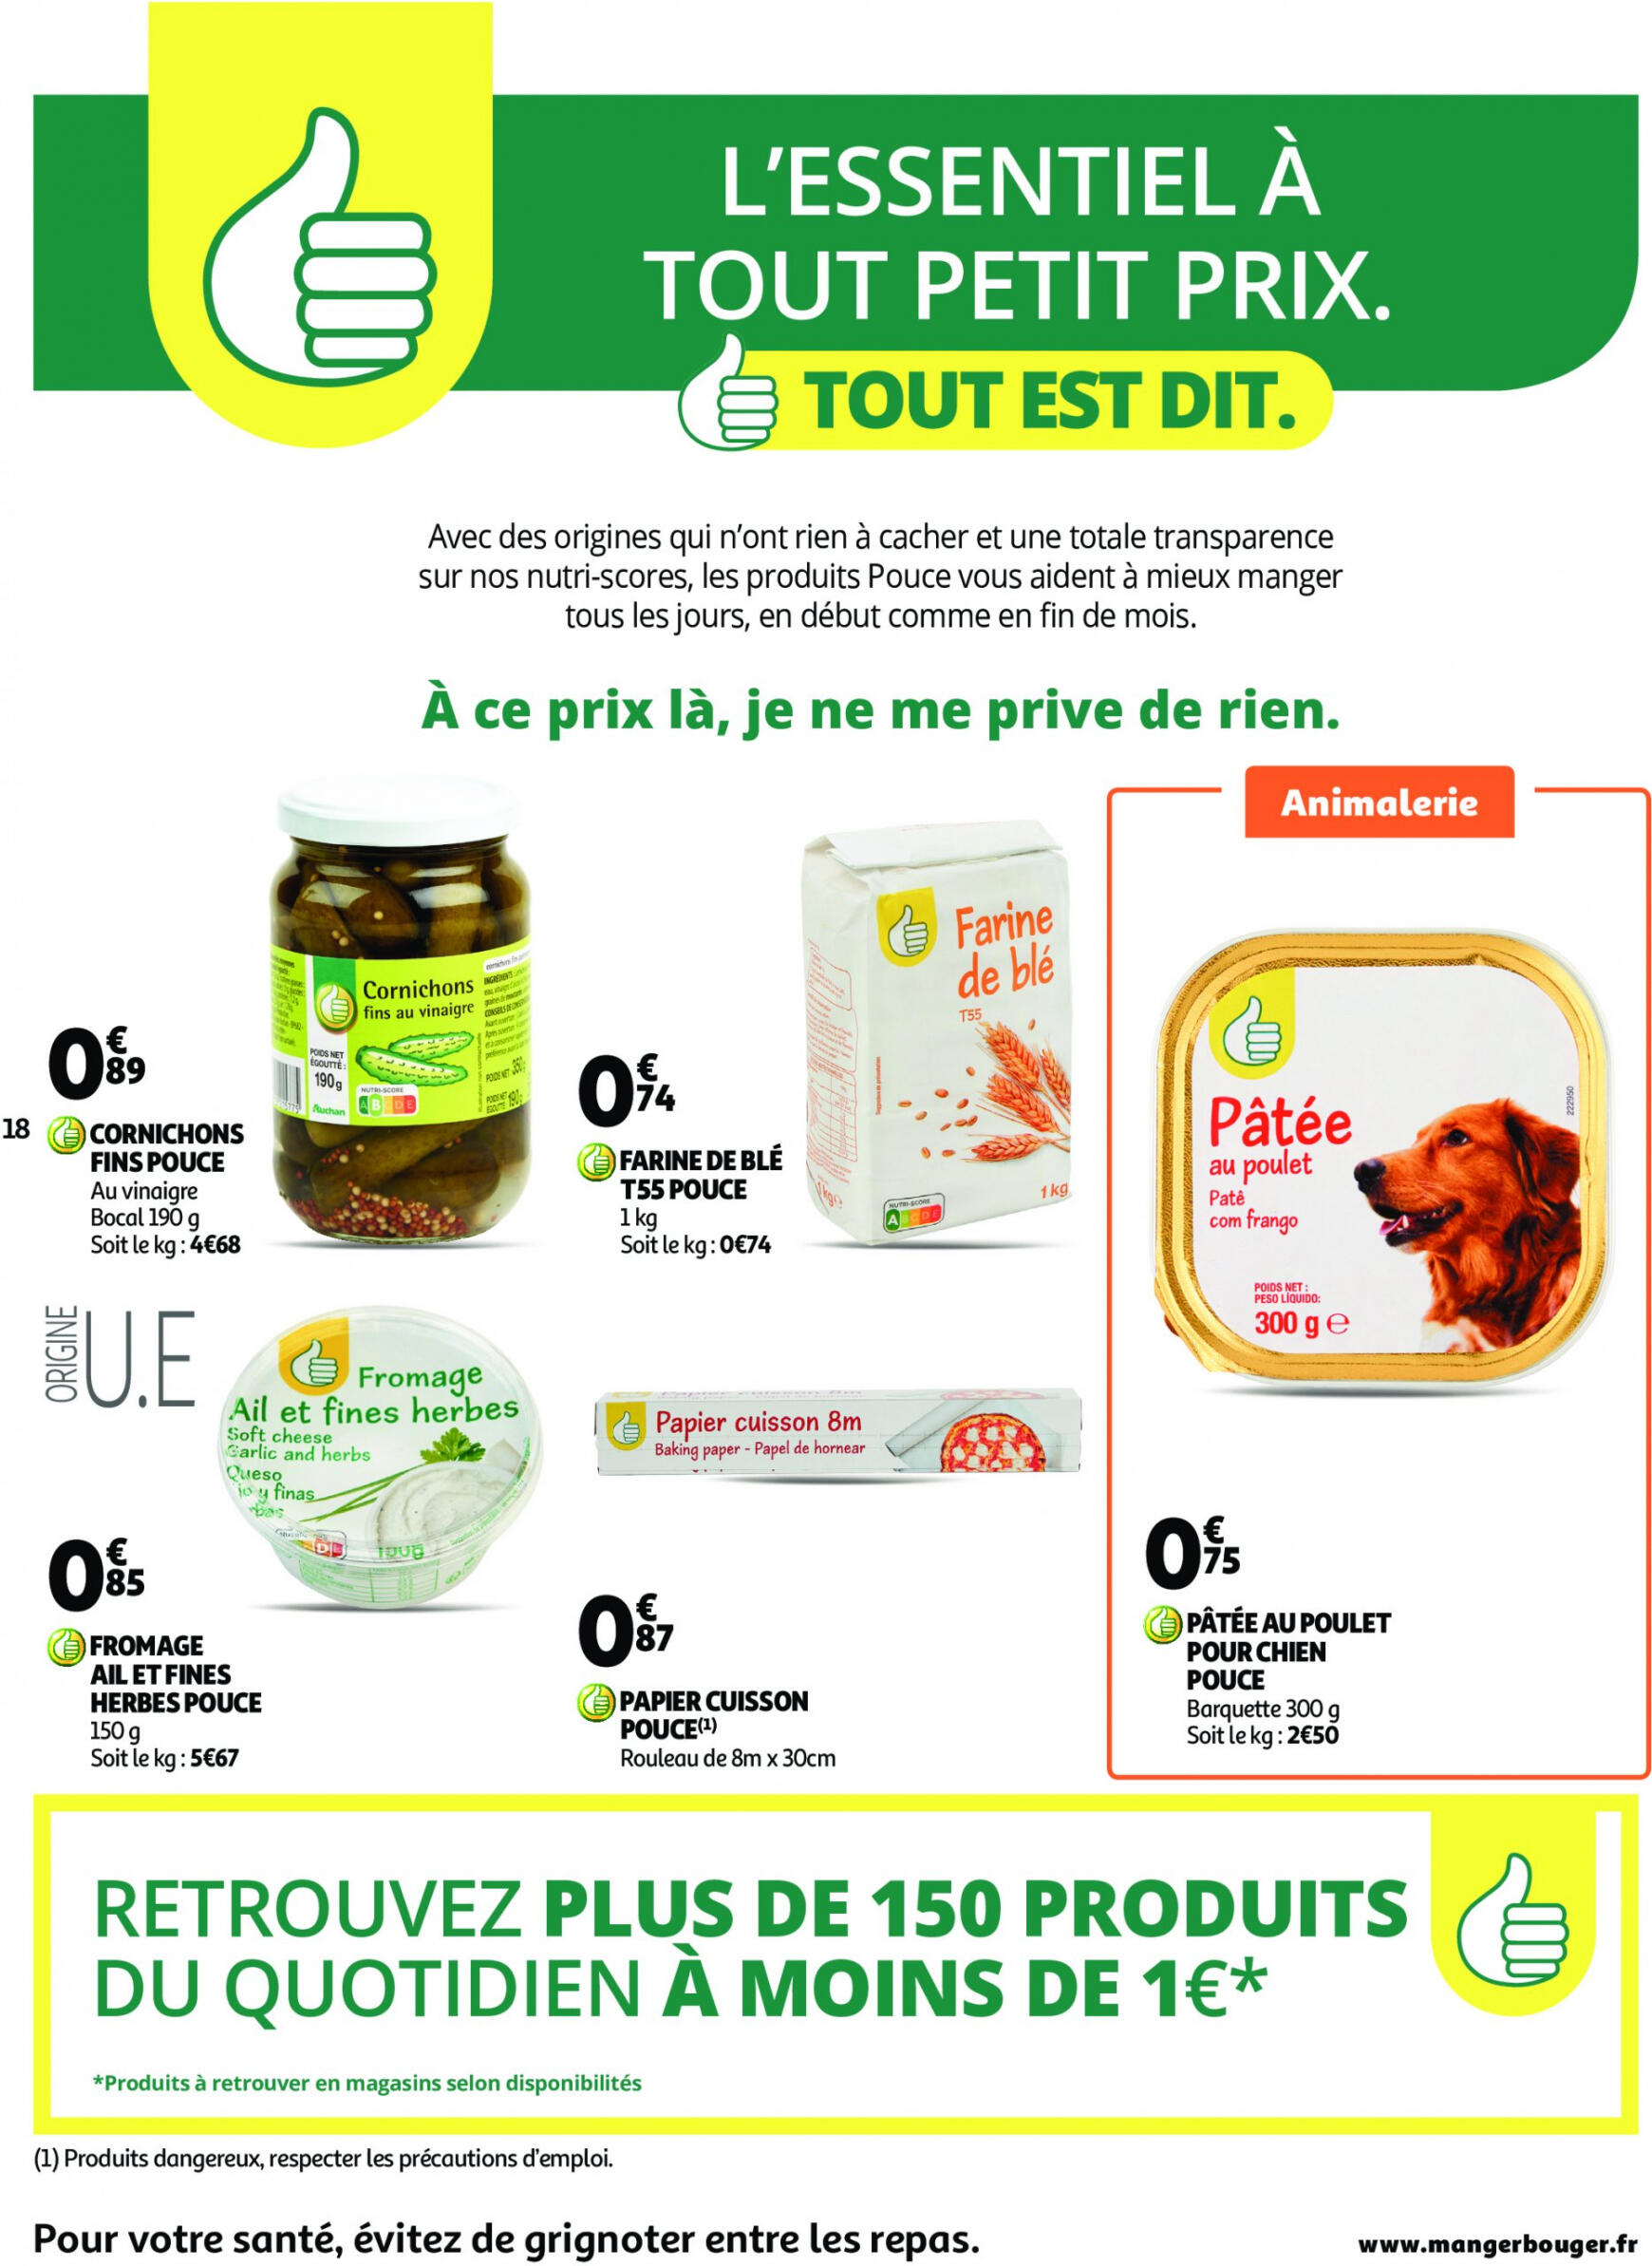 auchan - Auchan supermarché - Faites le plein de bonnes affaires folder huidig 22.05. - 26.05. - page: 18